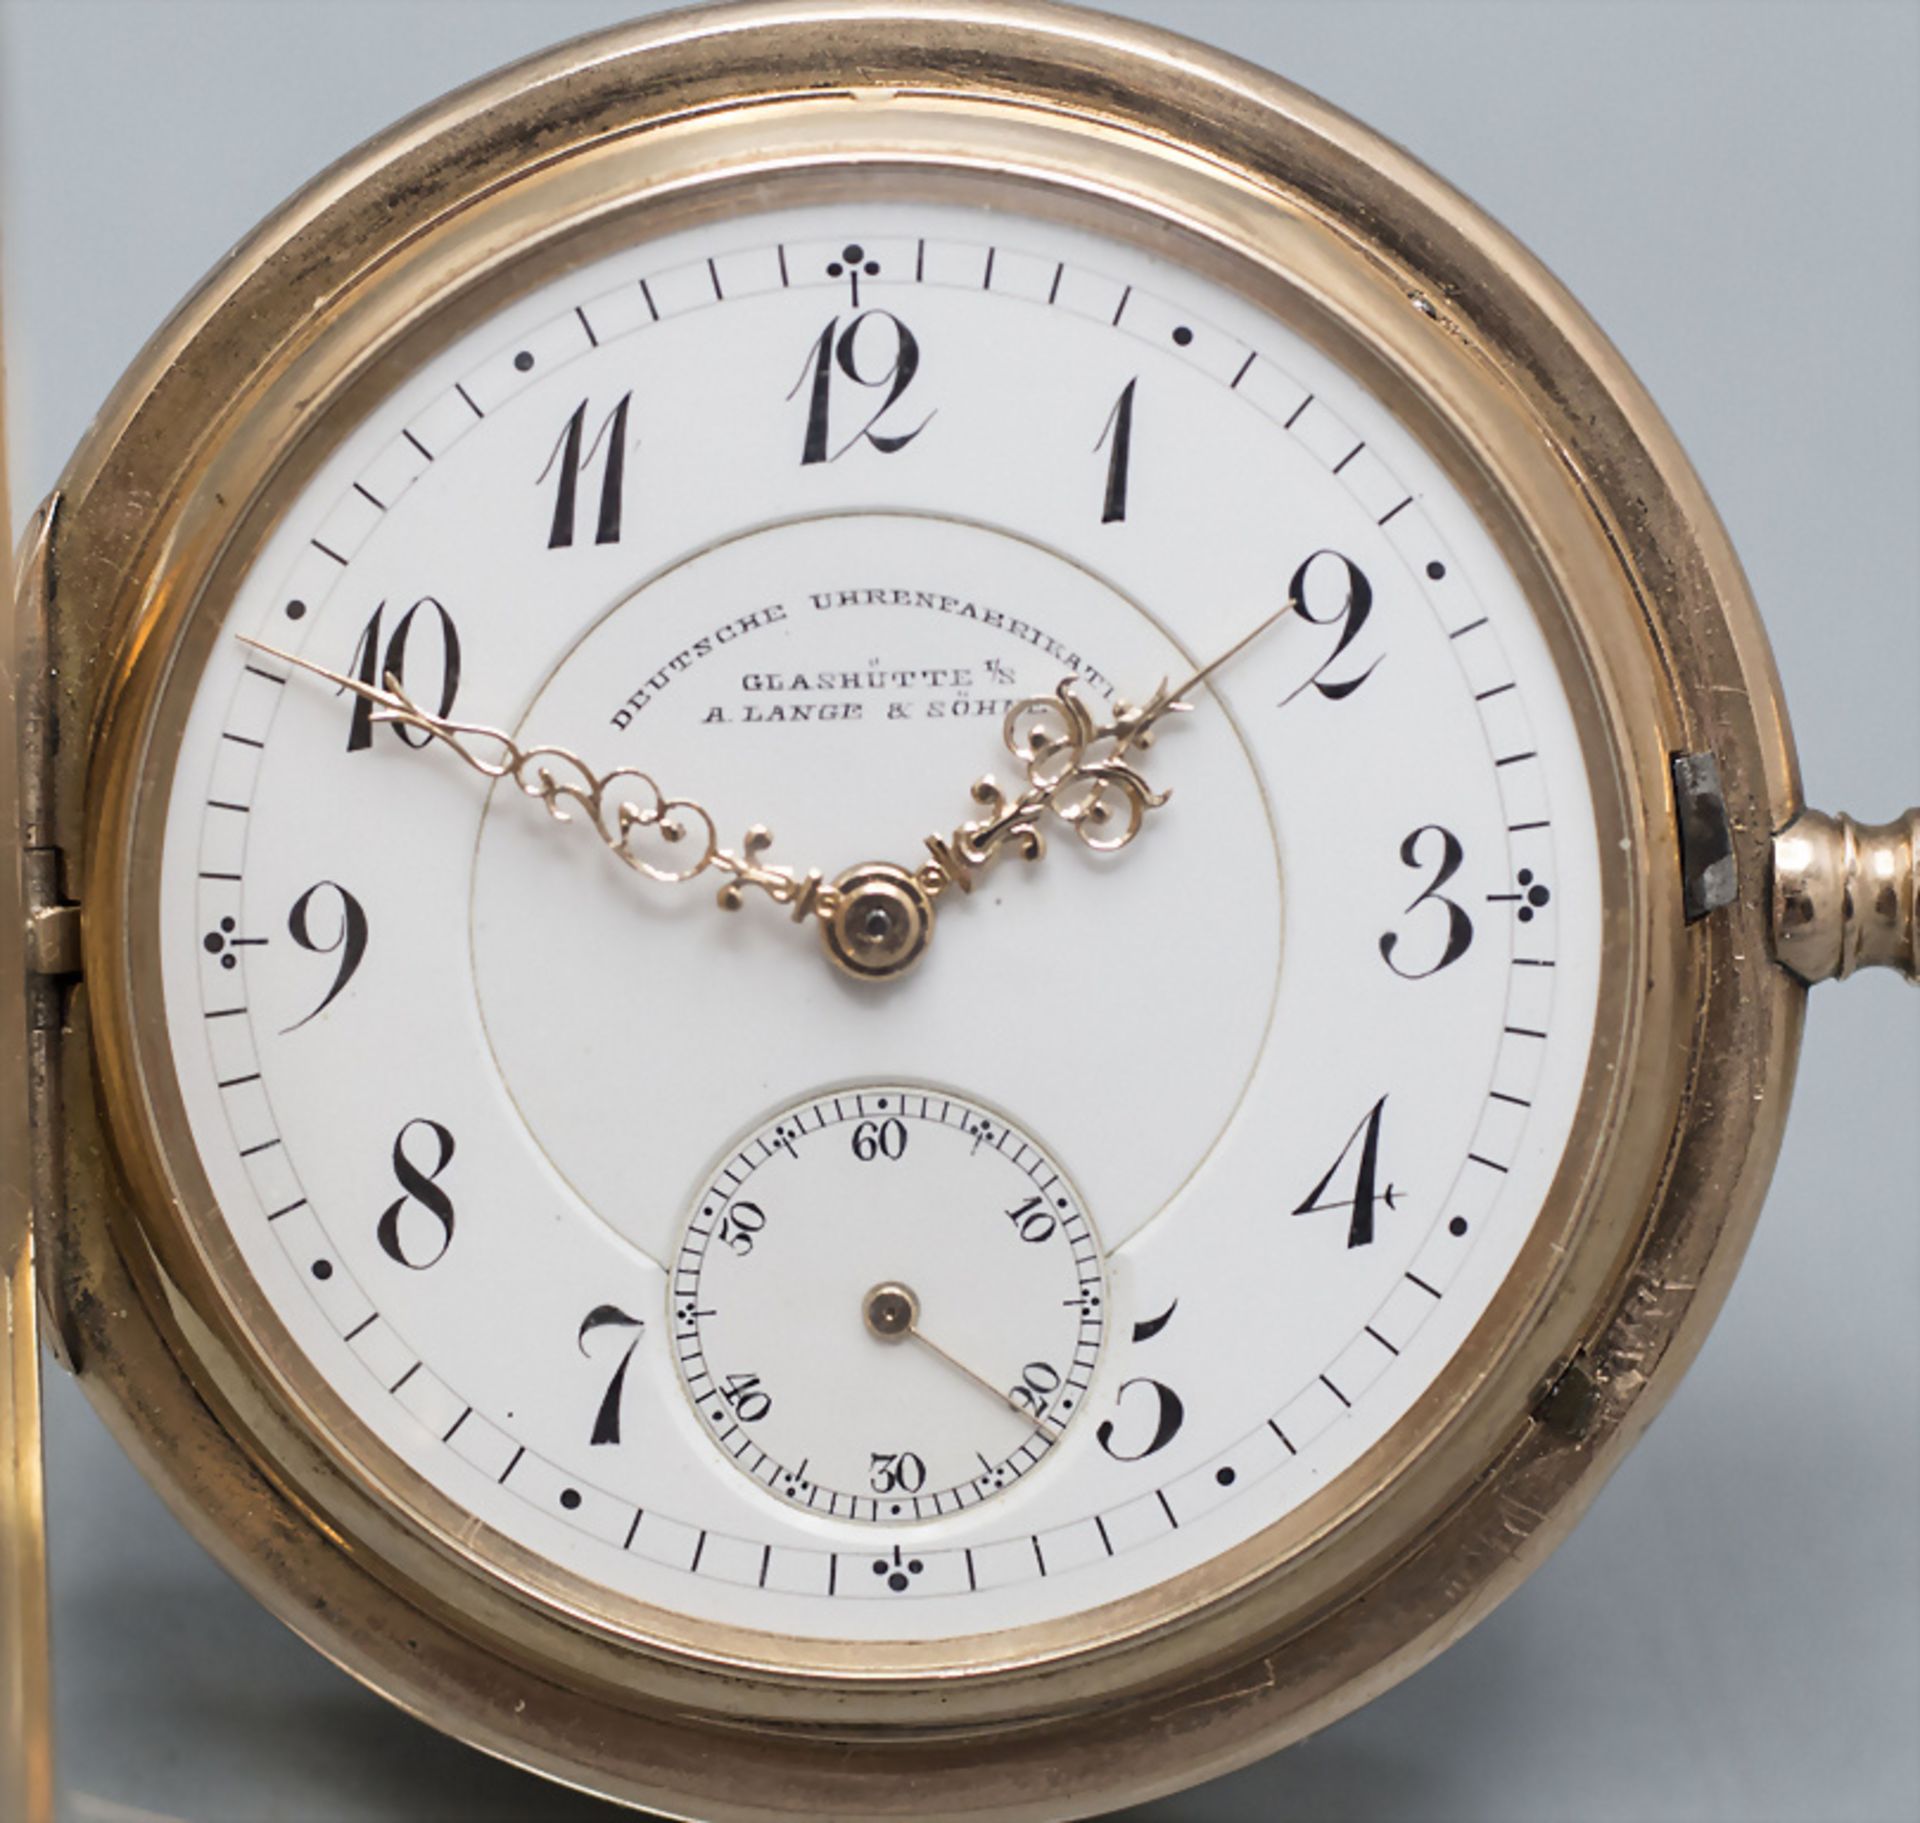 Savonette Taschenuhr / A 14 ct gold pocket watch, A. Lange & Söhne, Glashütte in Sachsen, 1897-1898